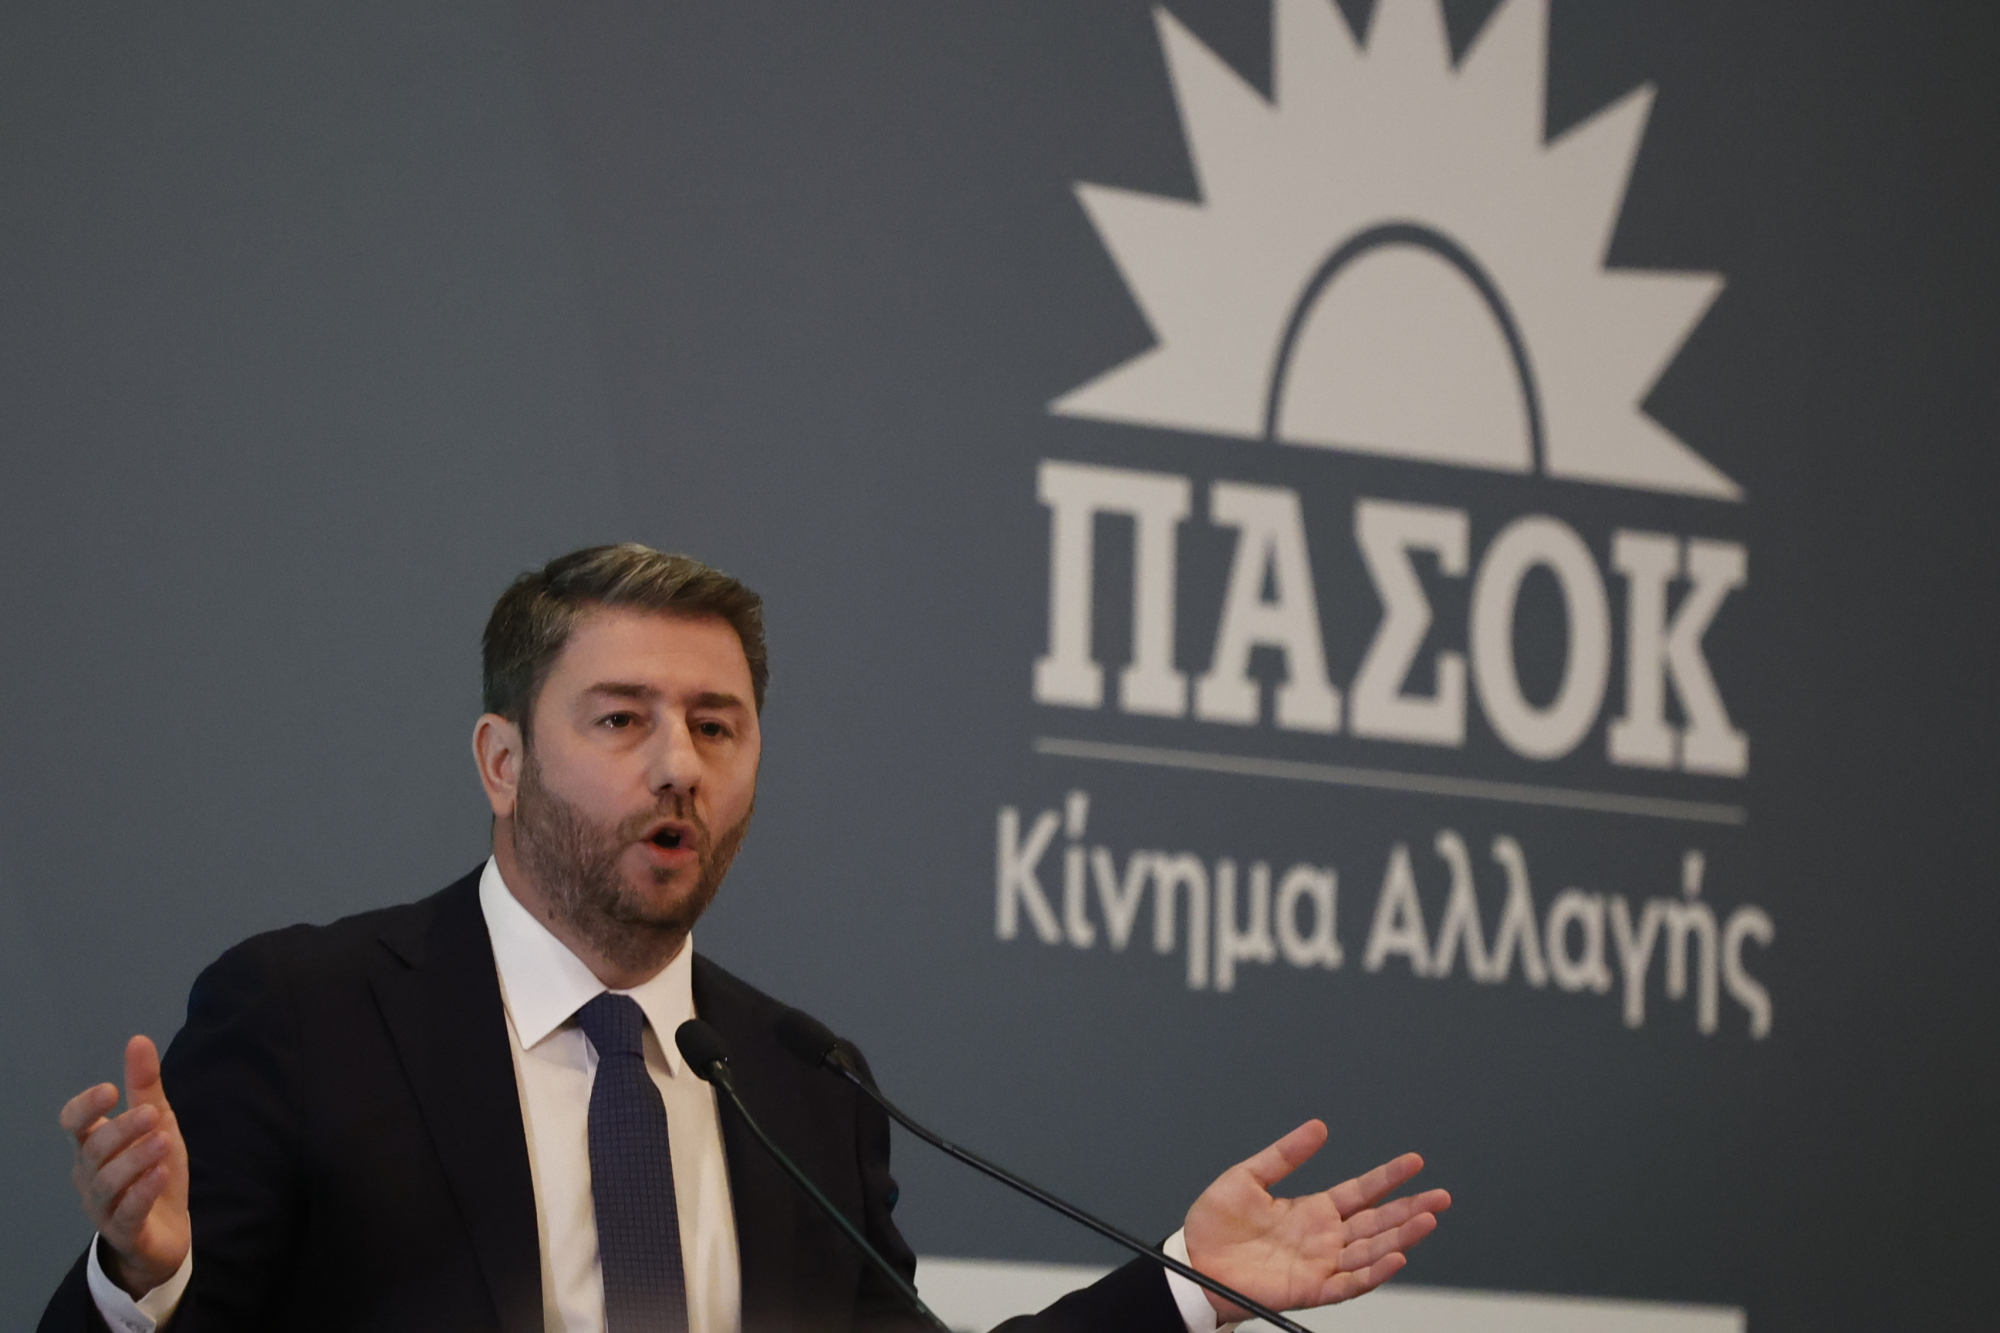 Νίκος Ανδρουλάκης: Είναι αναγκαίο να διασυνδέσουμε το τουριστικό προϊόν με την παραγωγή και τη μεταποίηση